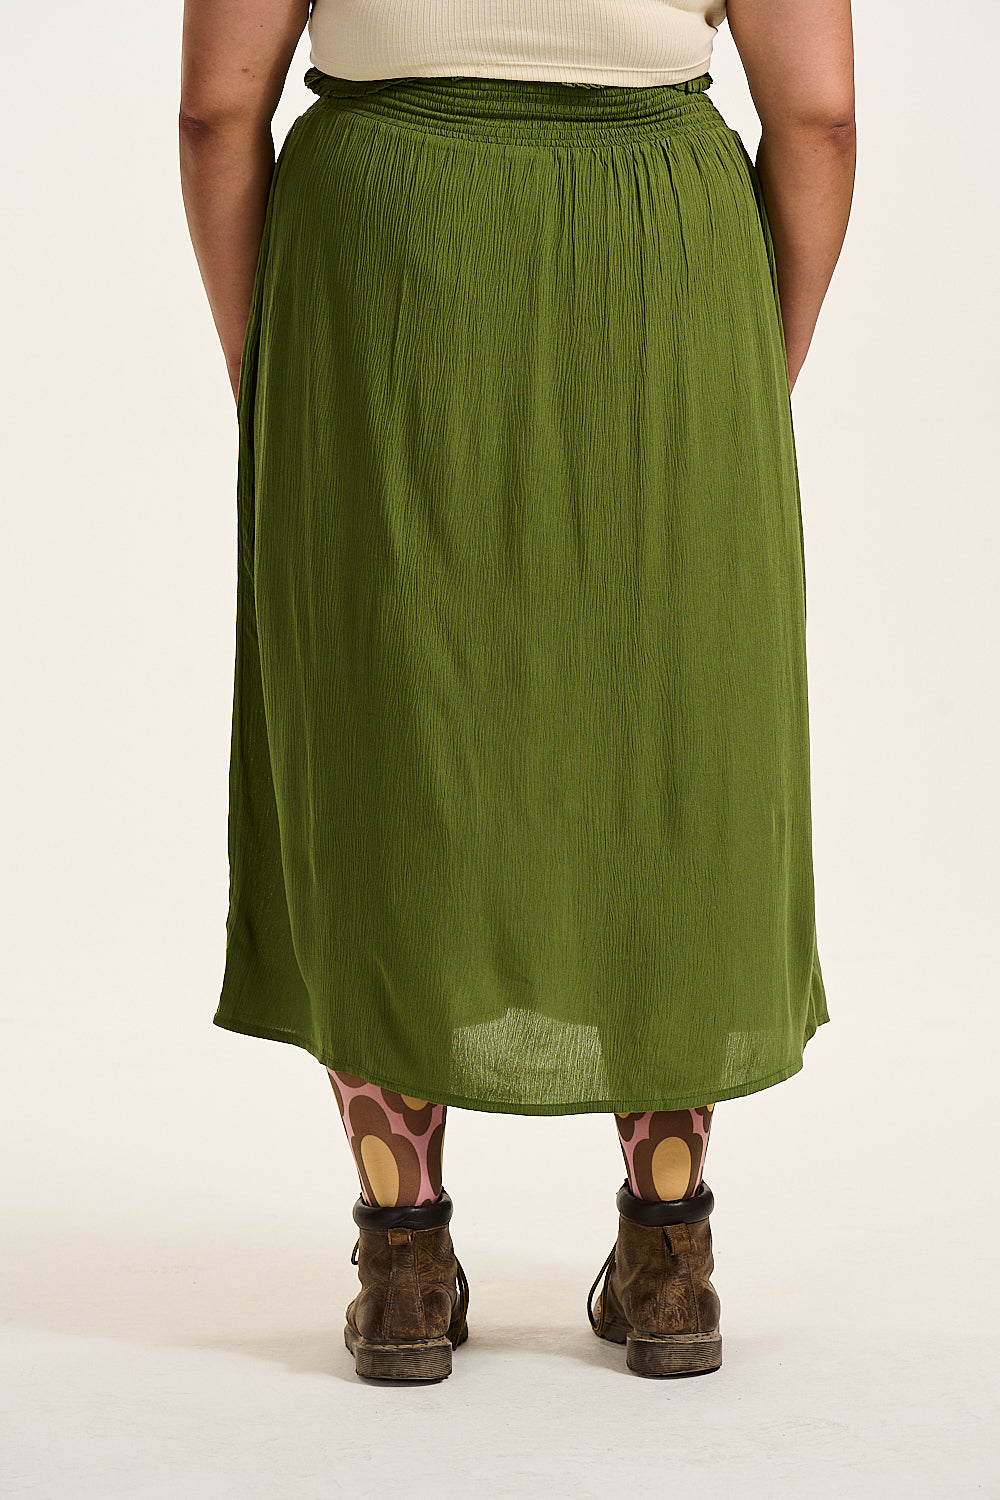 Poppy Skirt: LENZING™ ECOVERO™ - Pesto Green